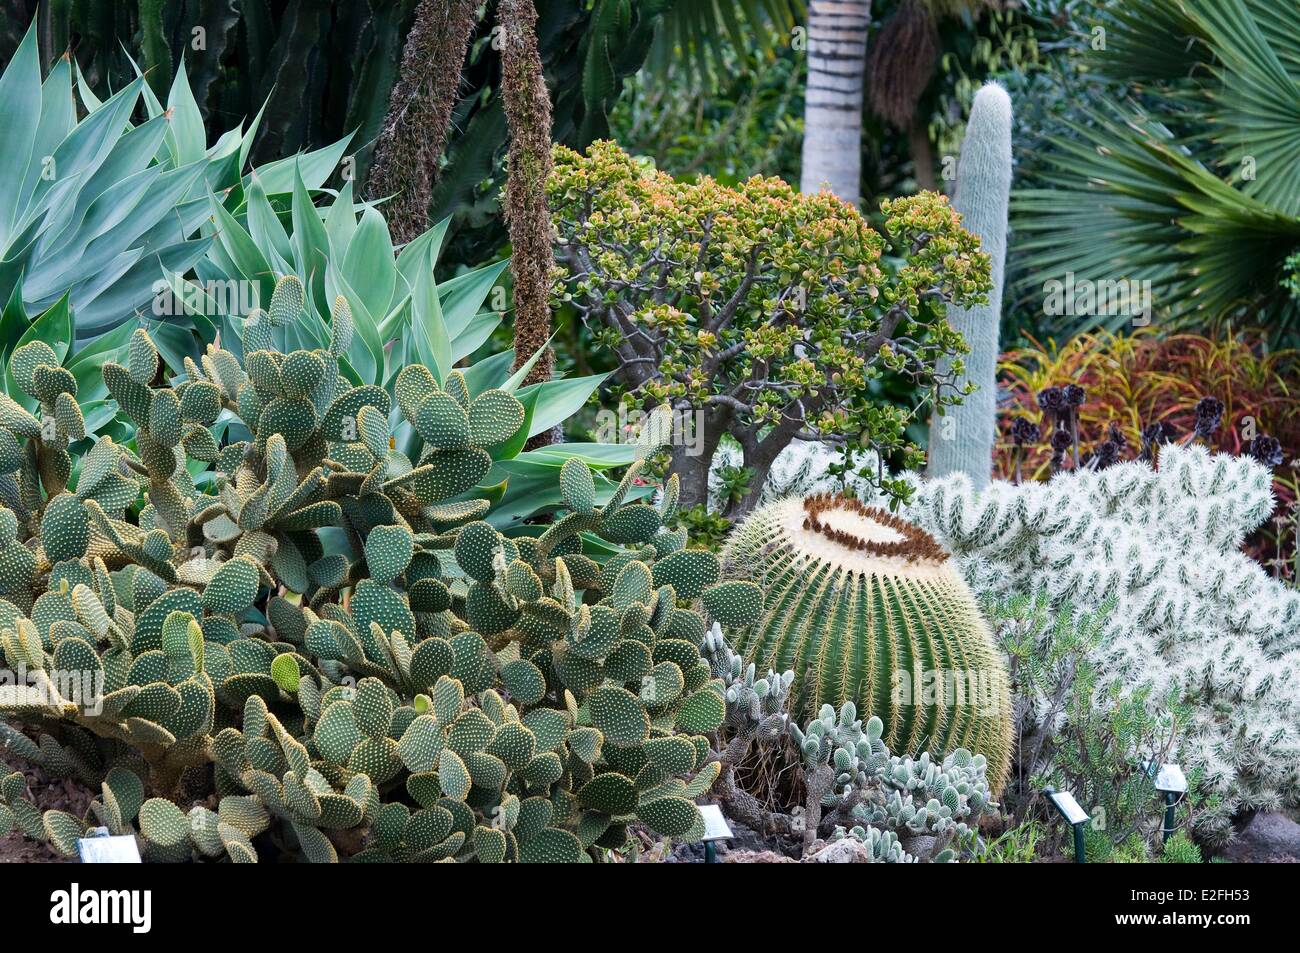 Spain, Canary Islands, Gran Canaria, Las Palmas, garden Marquesa Arucas, cactus garden Stock Photo